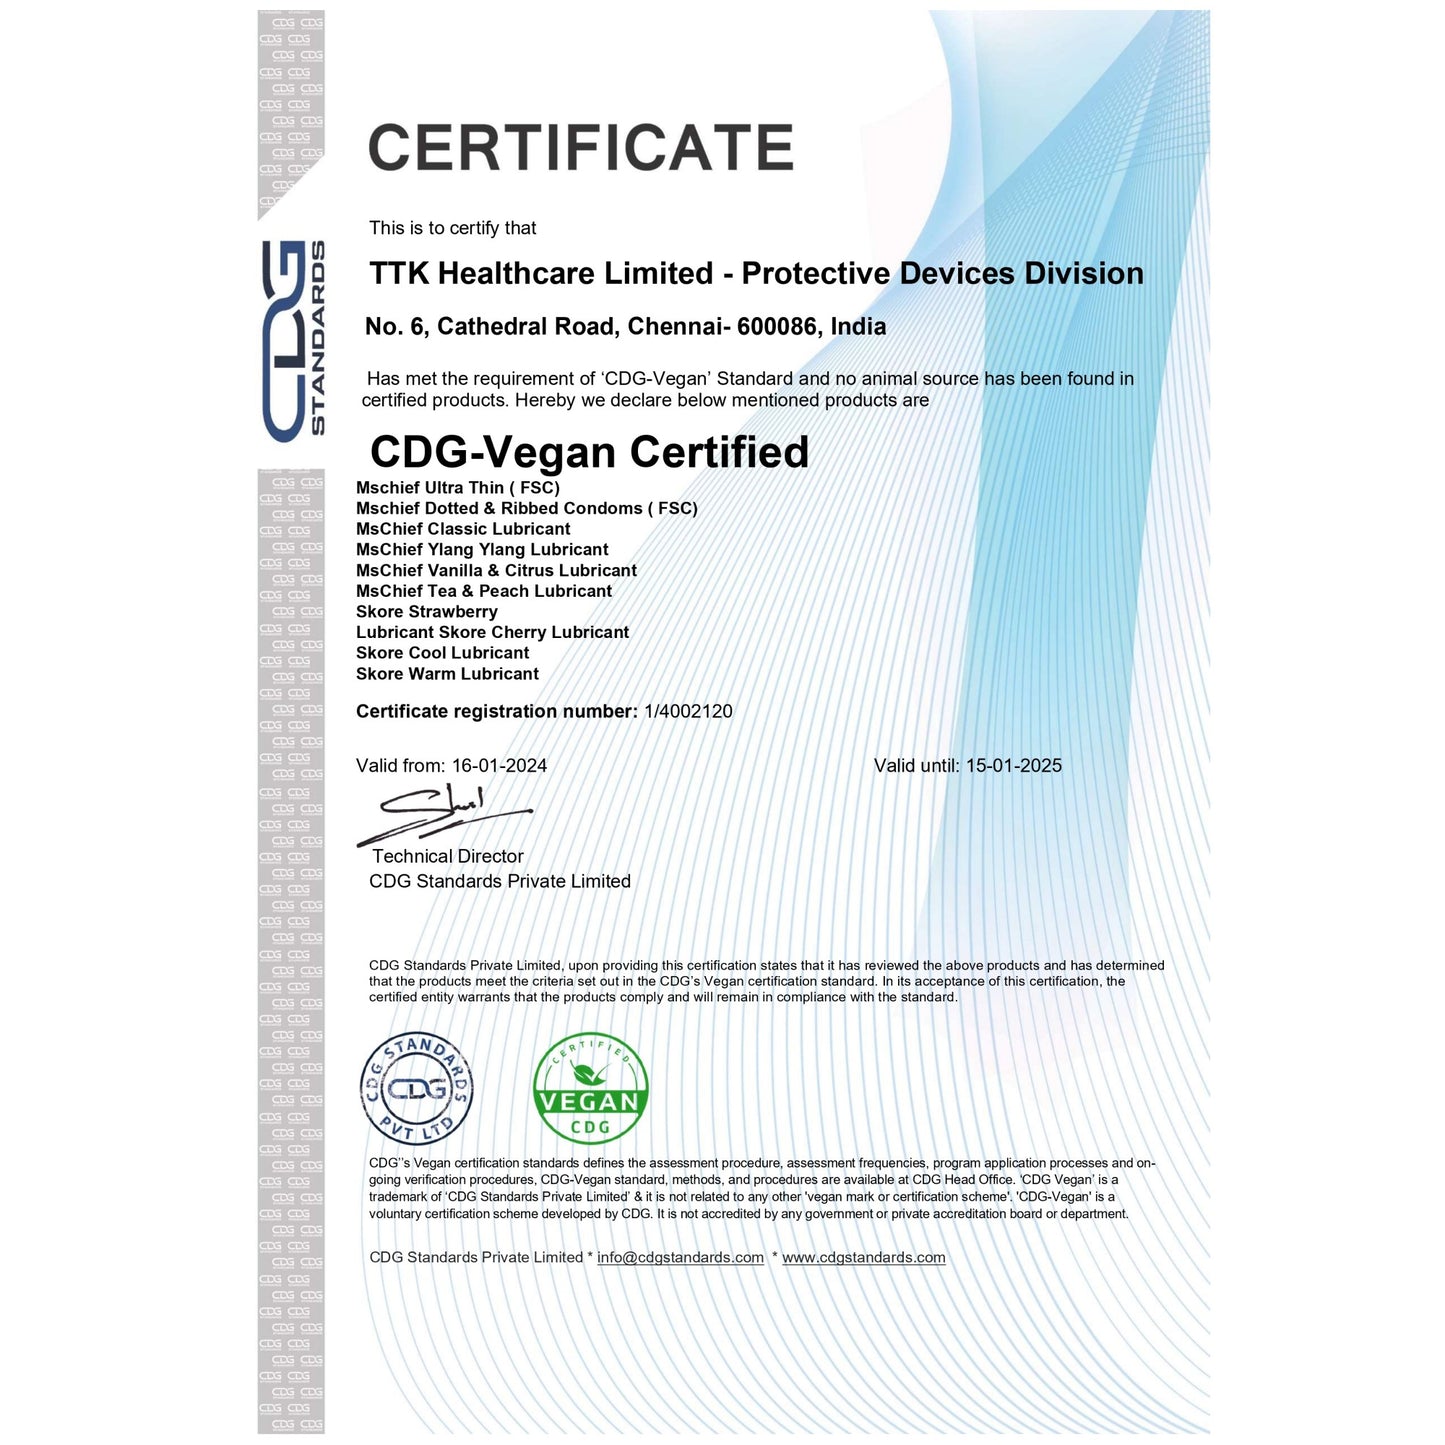 Mschief Vanilla & Citrus Flavoured Lubricants is Certified Vegan Lube